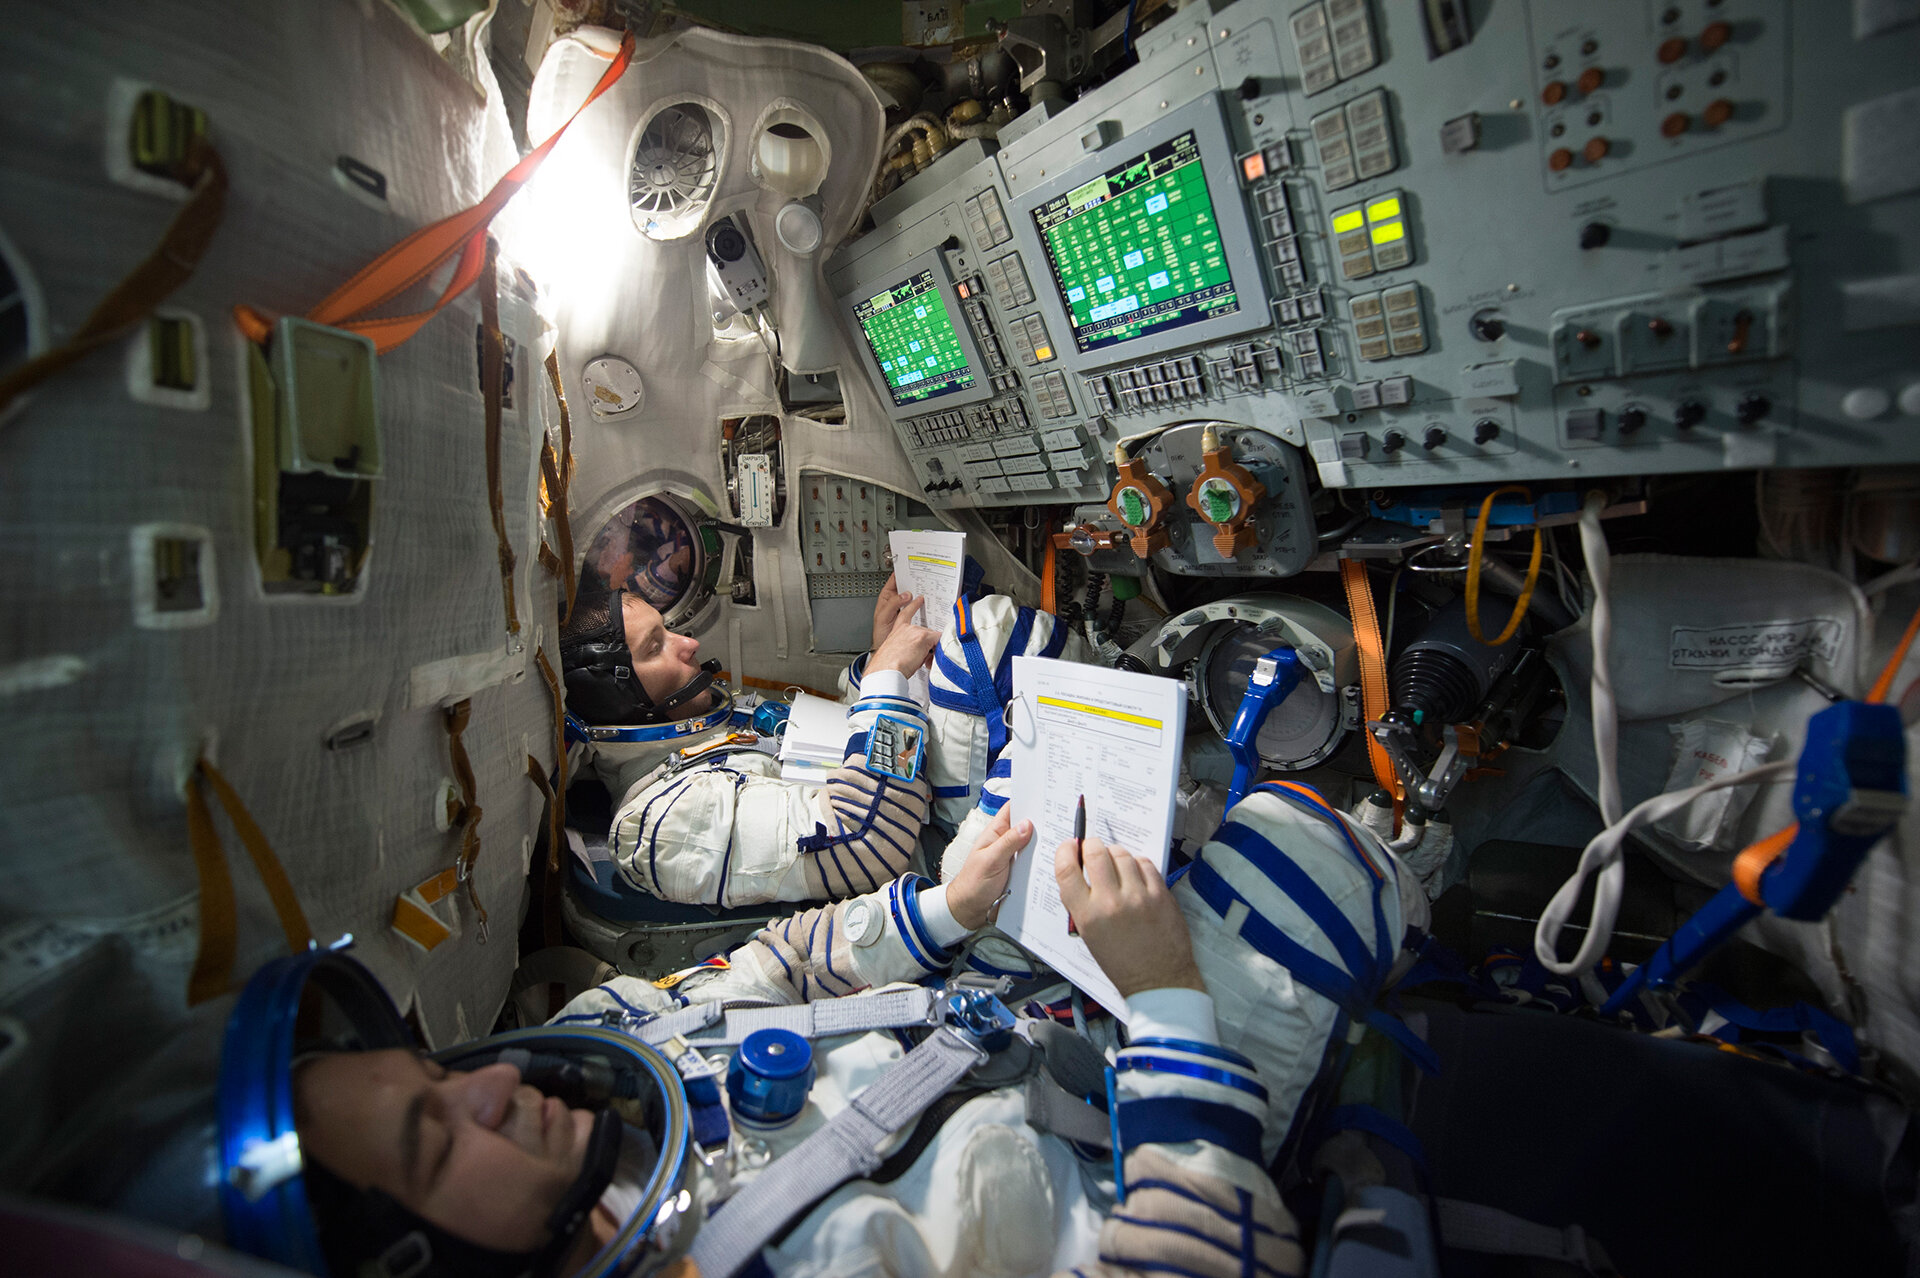 ESA astronaut Thomas Pesquet took the left seat in the Soyuz simulator